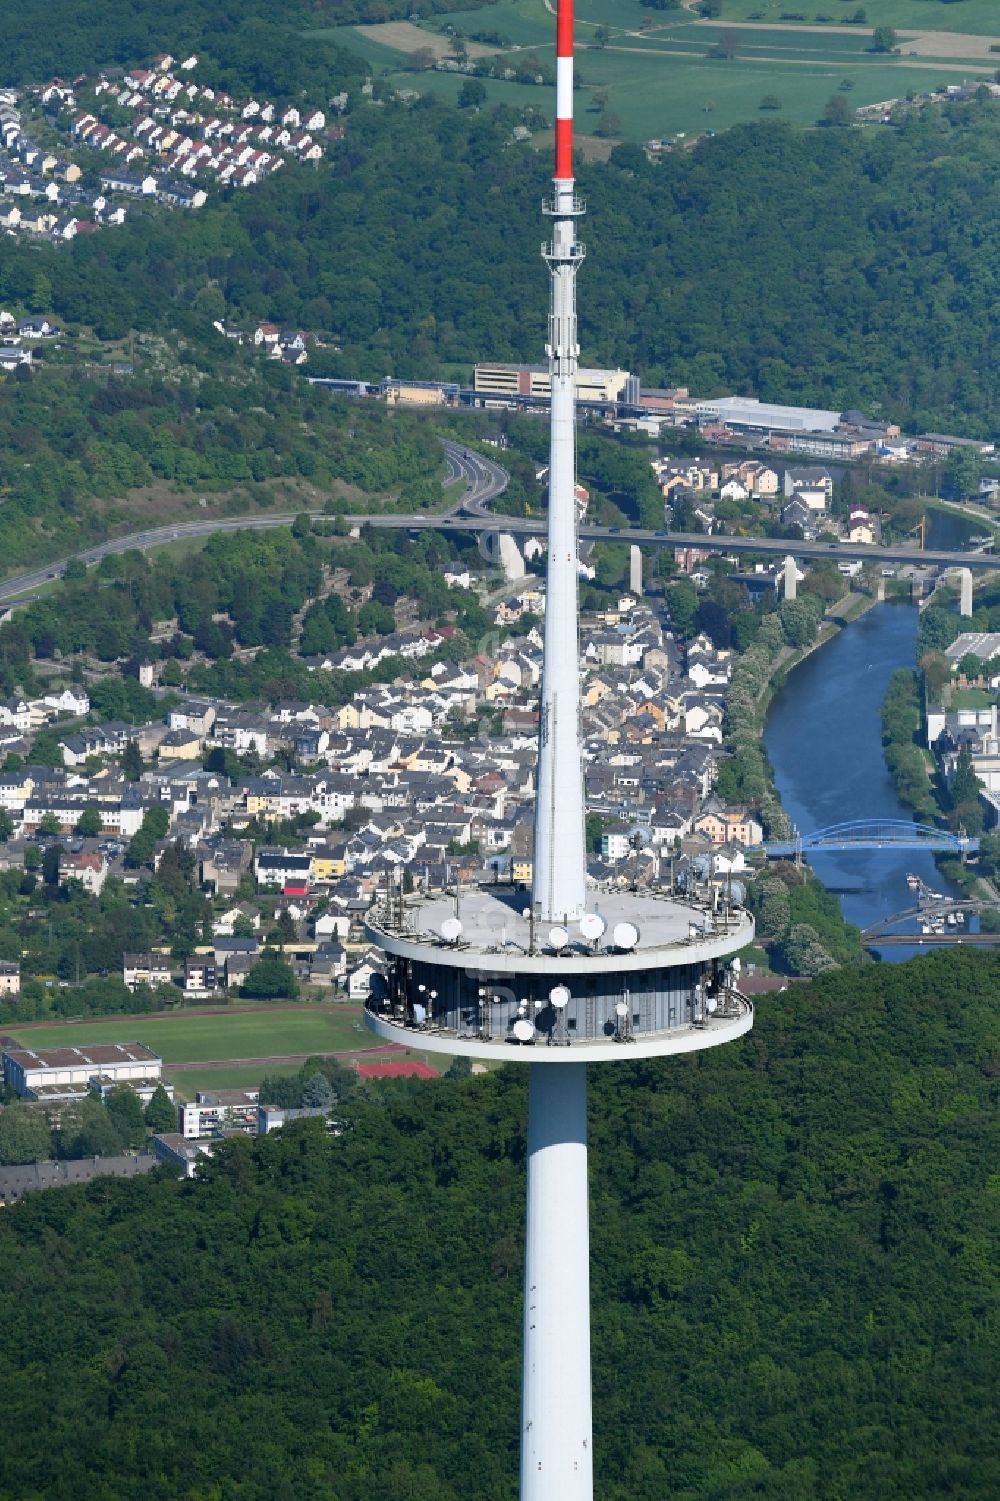 Koblenz von oben - Fernmeldeturm und Fernsehturm Kühkopf in Koblenz im Bundesland Rheinland-Pfalz, Deutschland